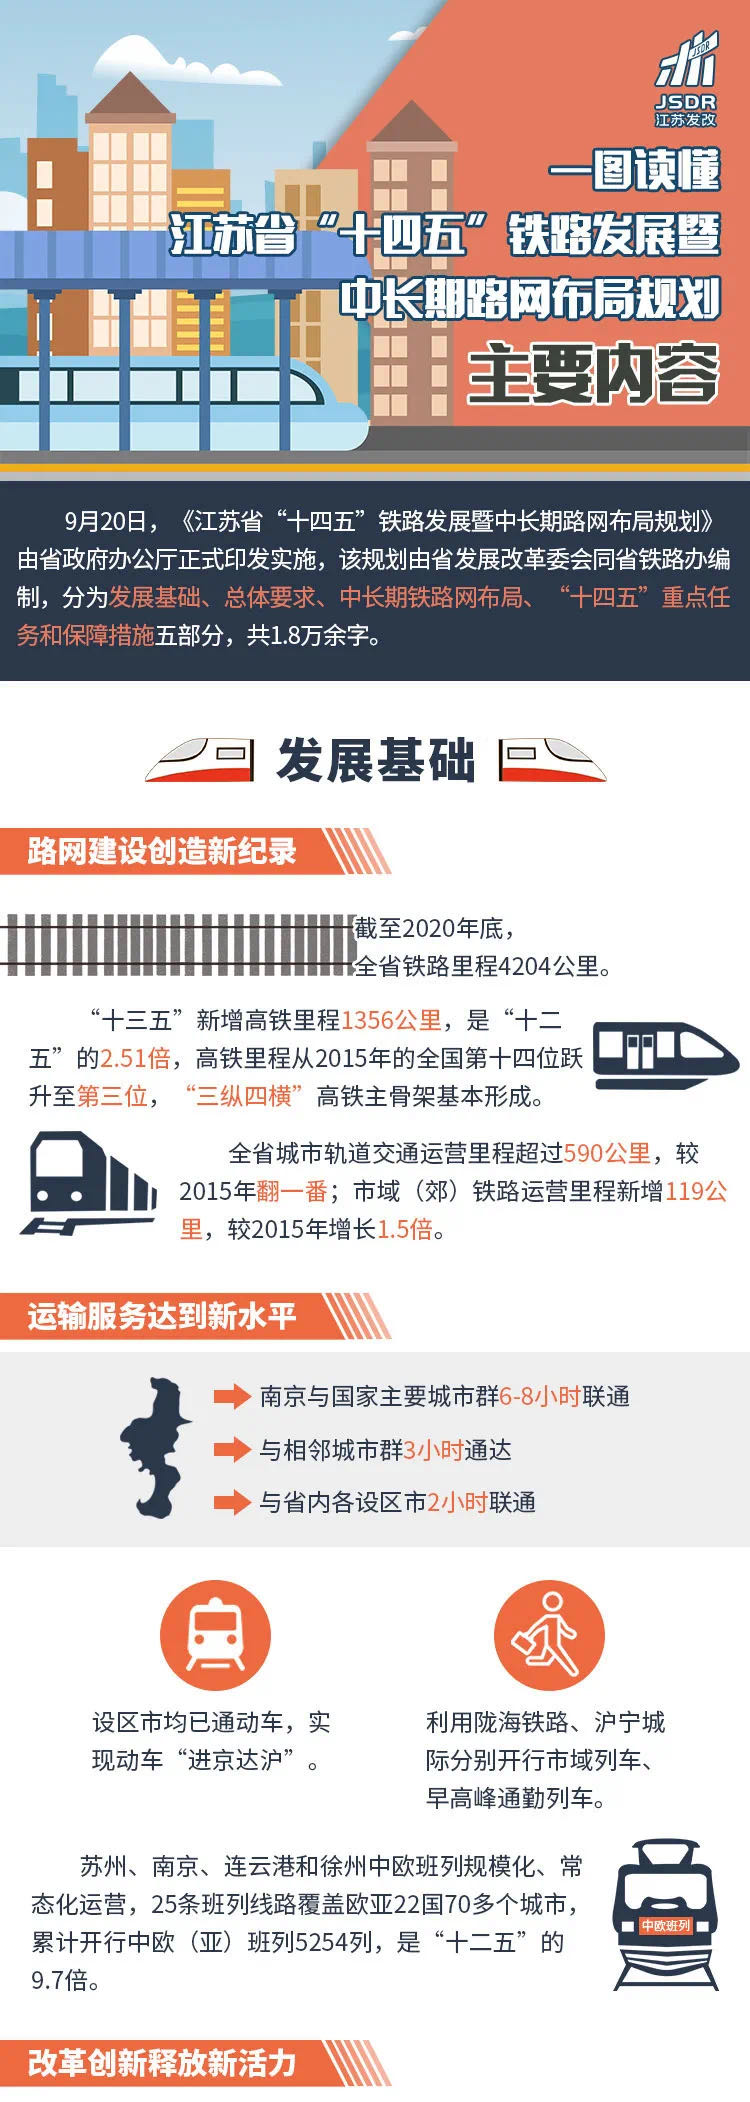 亚博买球网址:
中国高铁从无到有:运营里程近4万公里稳居世界第一(图)